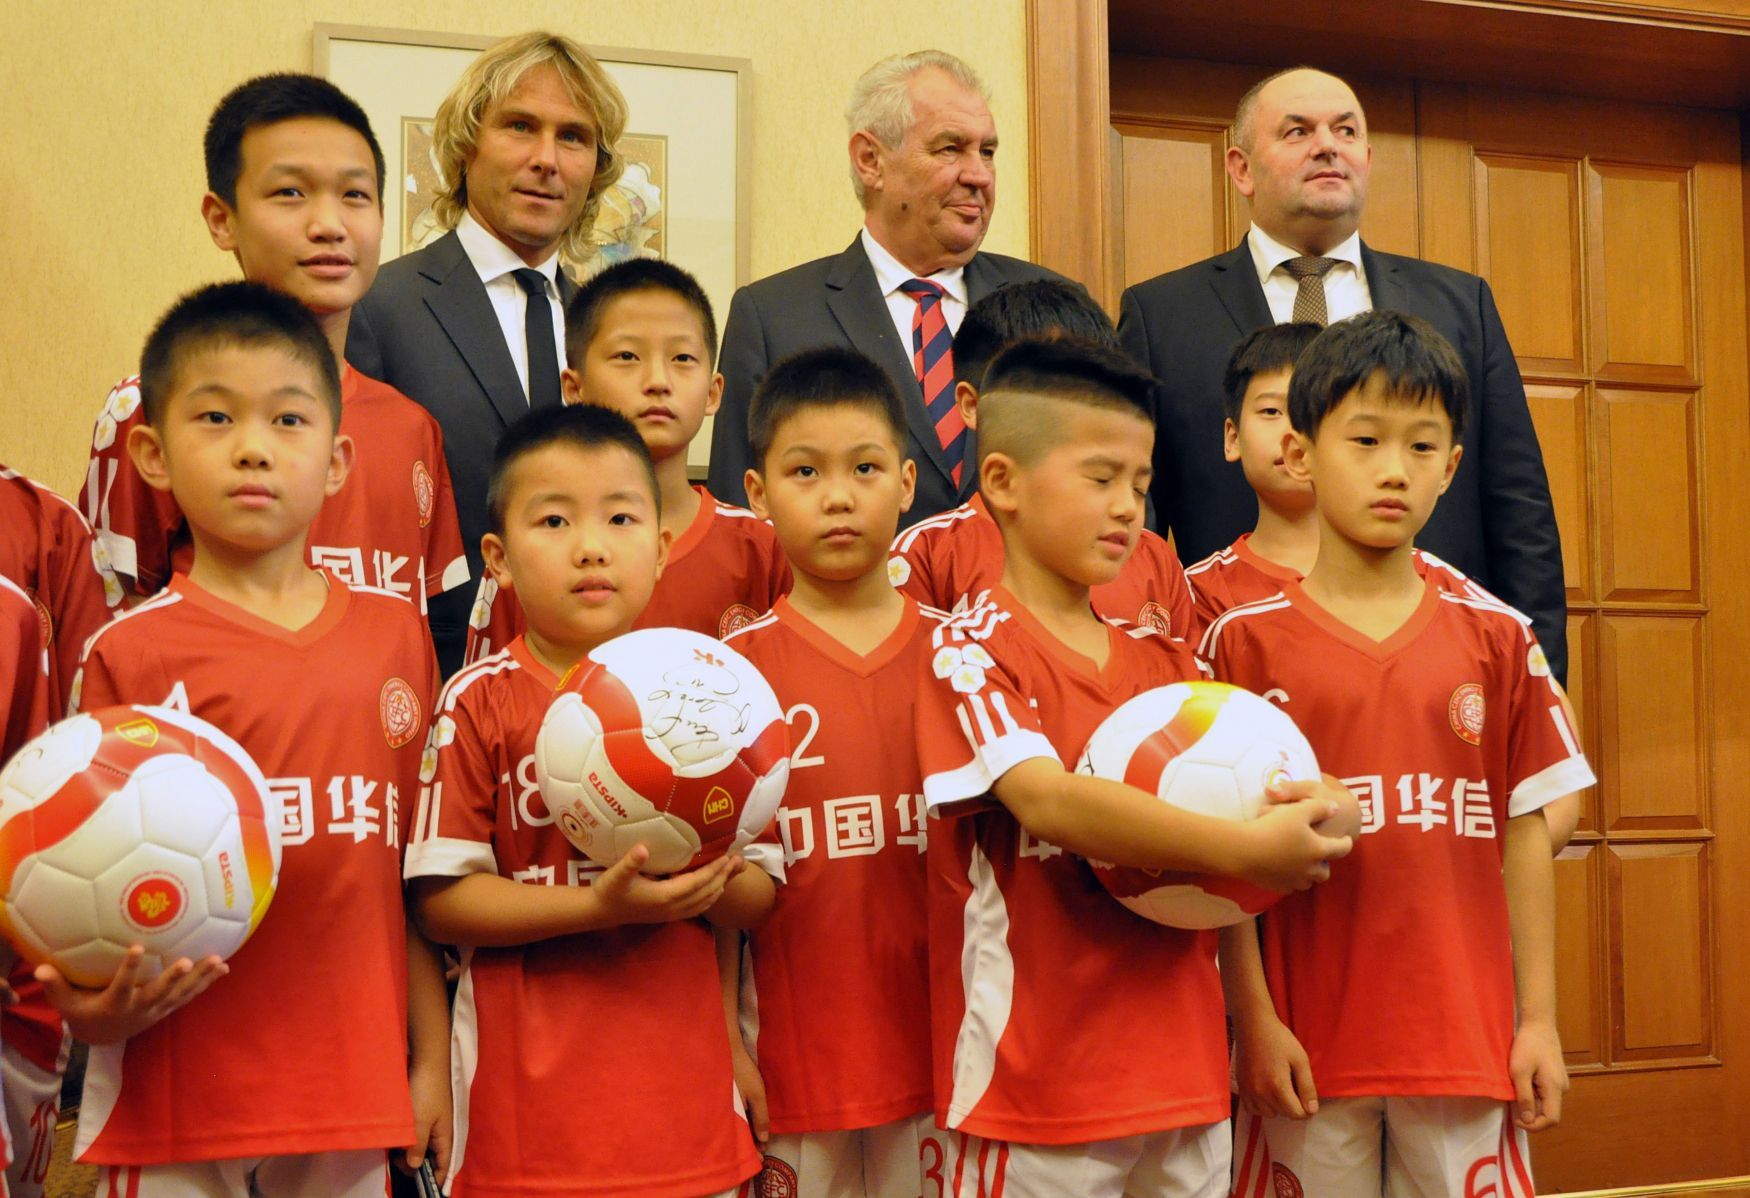 Pavel Nedvěd, Miloš Zeman, Miroslav Pelta, Čína, 2015, fotbalisté